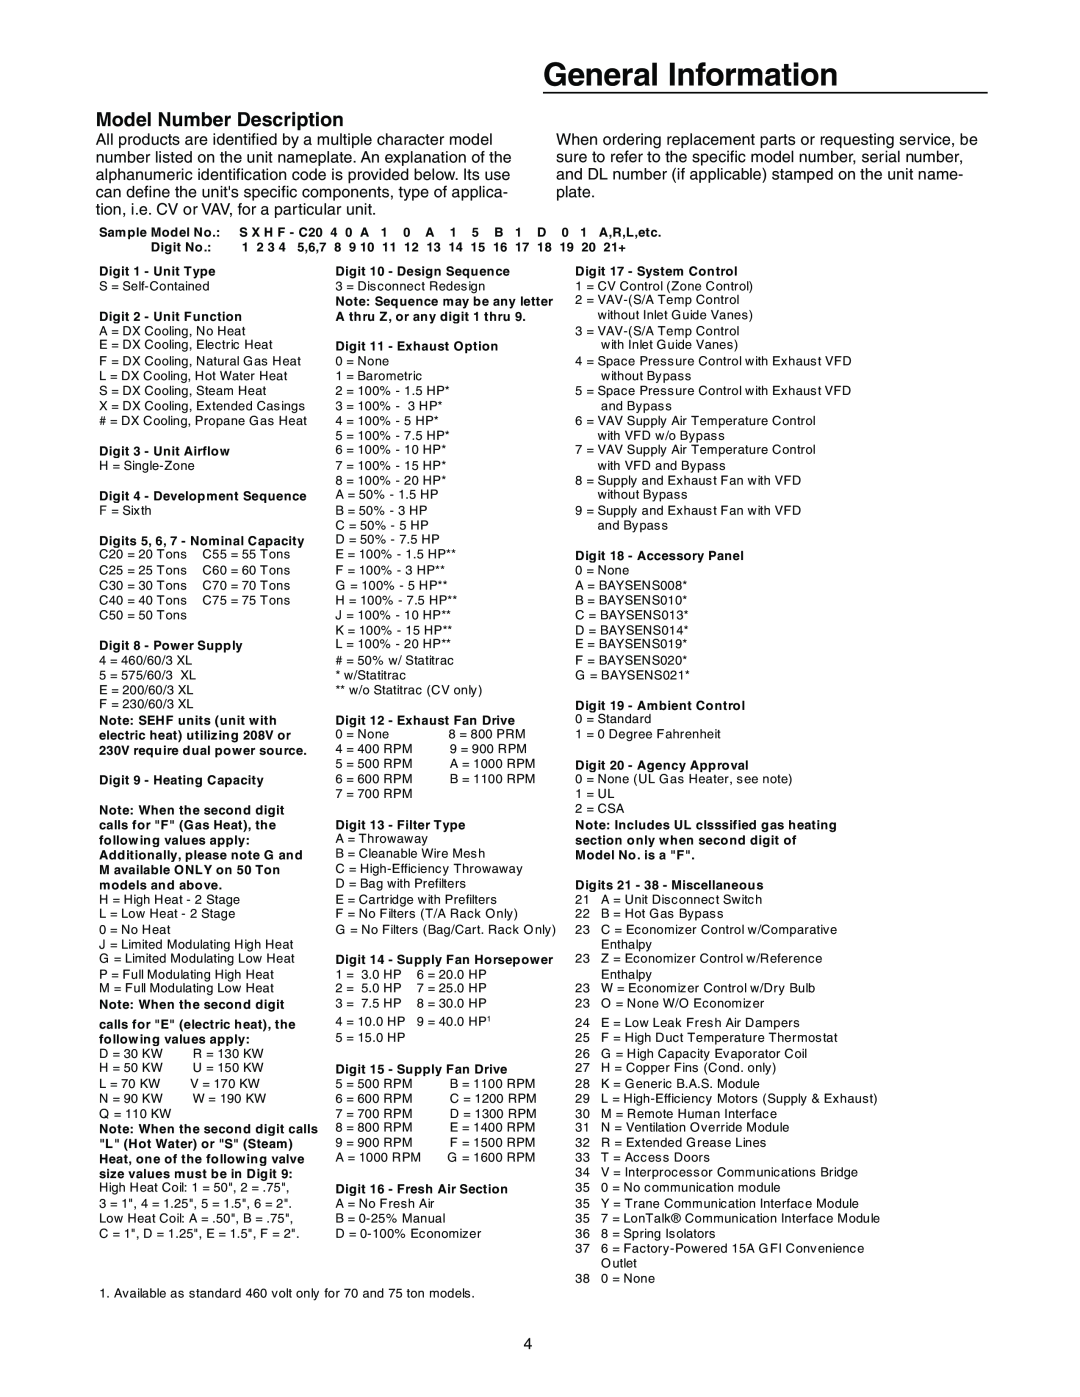 Trane RT-SVX10C-EN specifications General Information, Model Number Description 